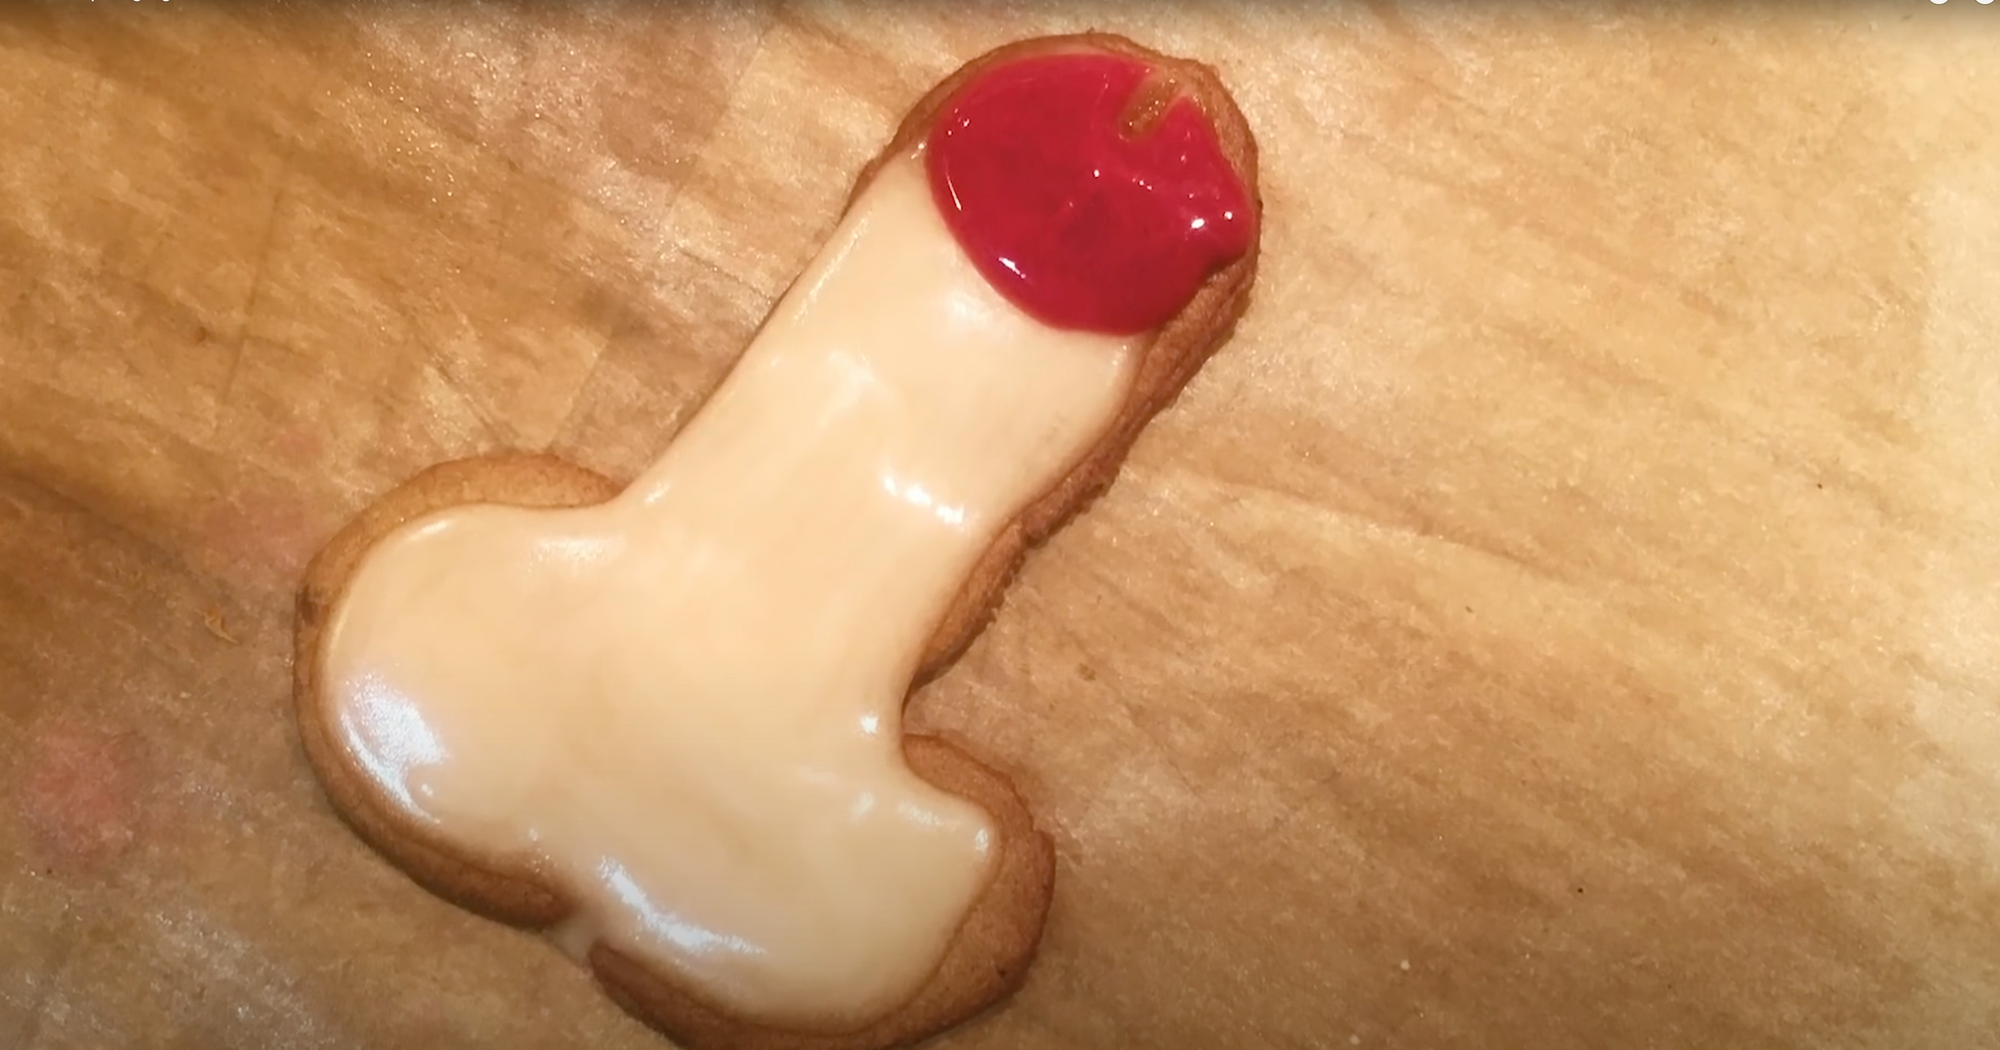 Penis shaped gingerbread cookies